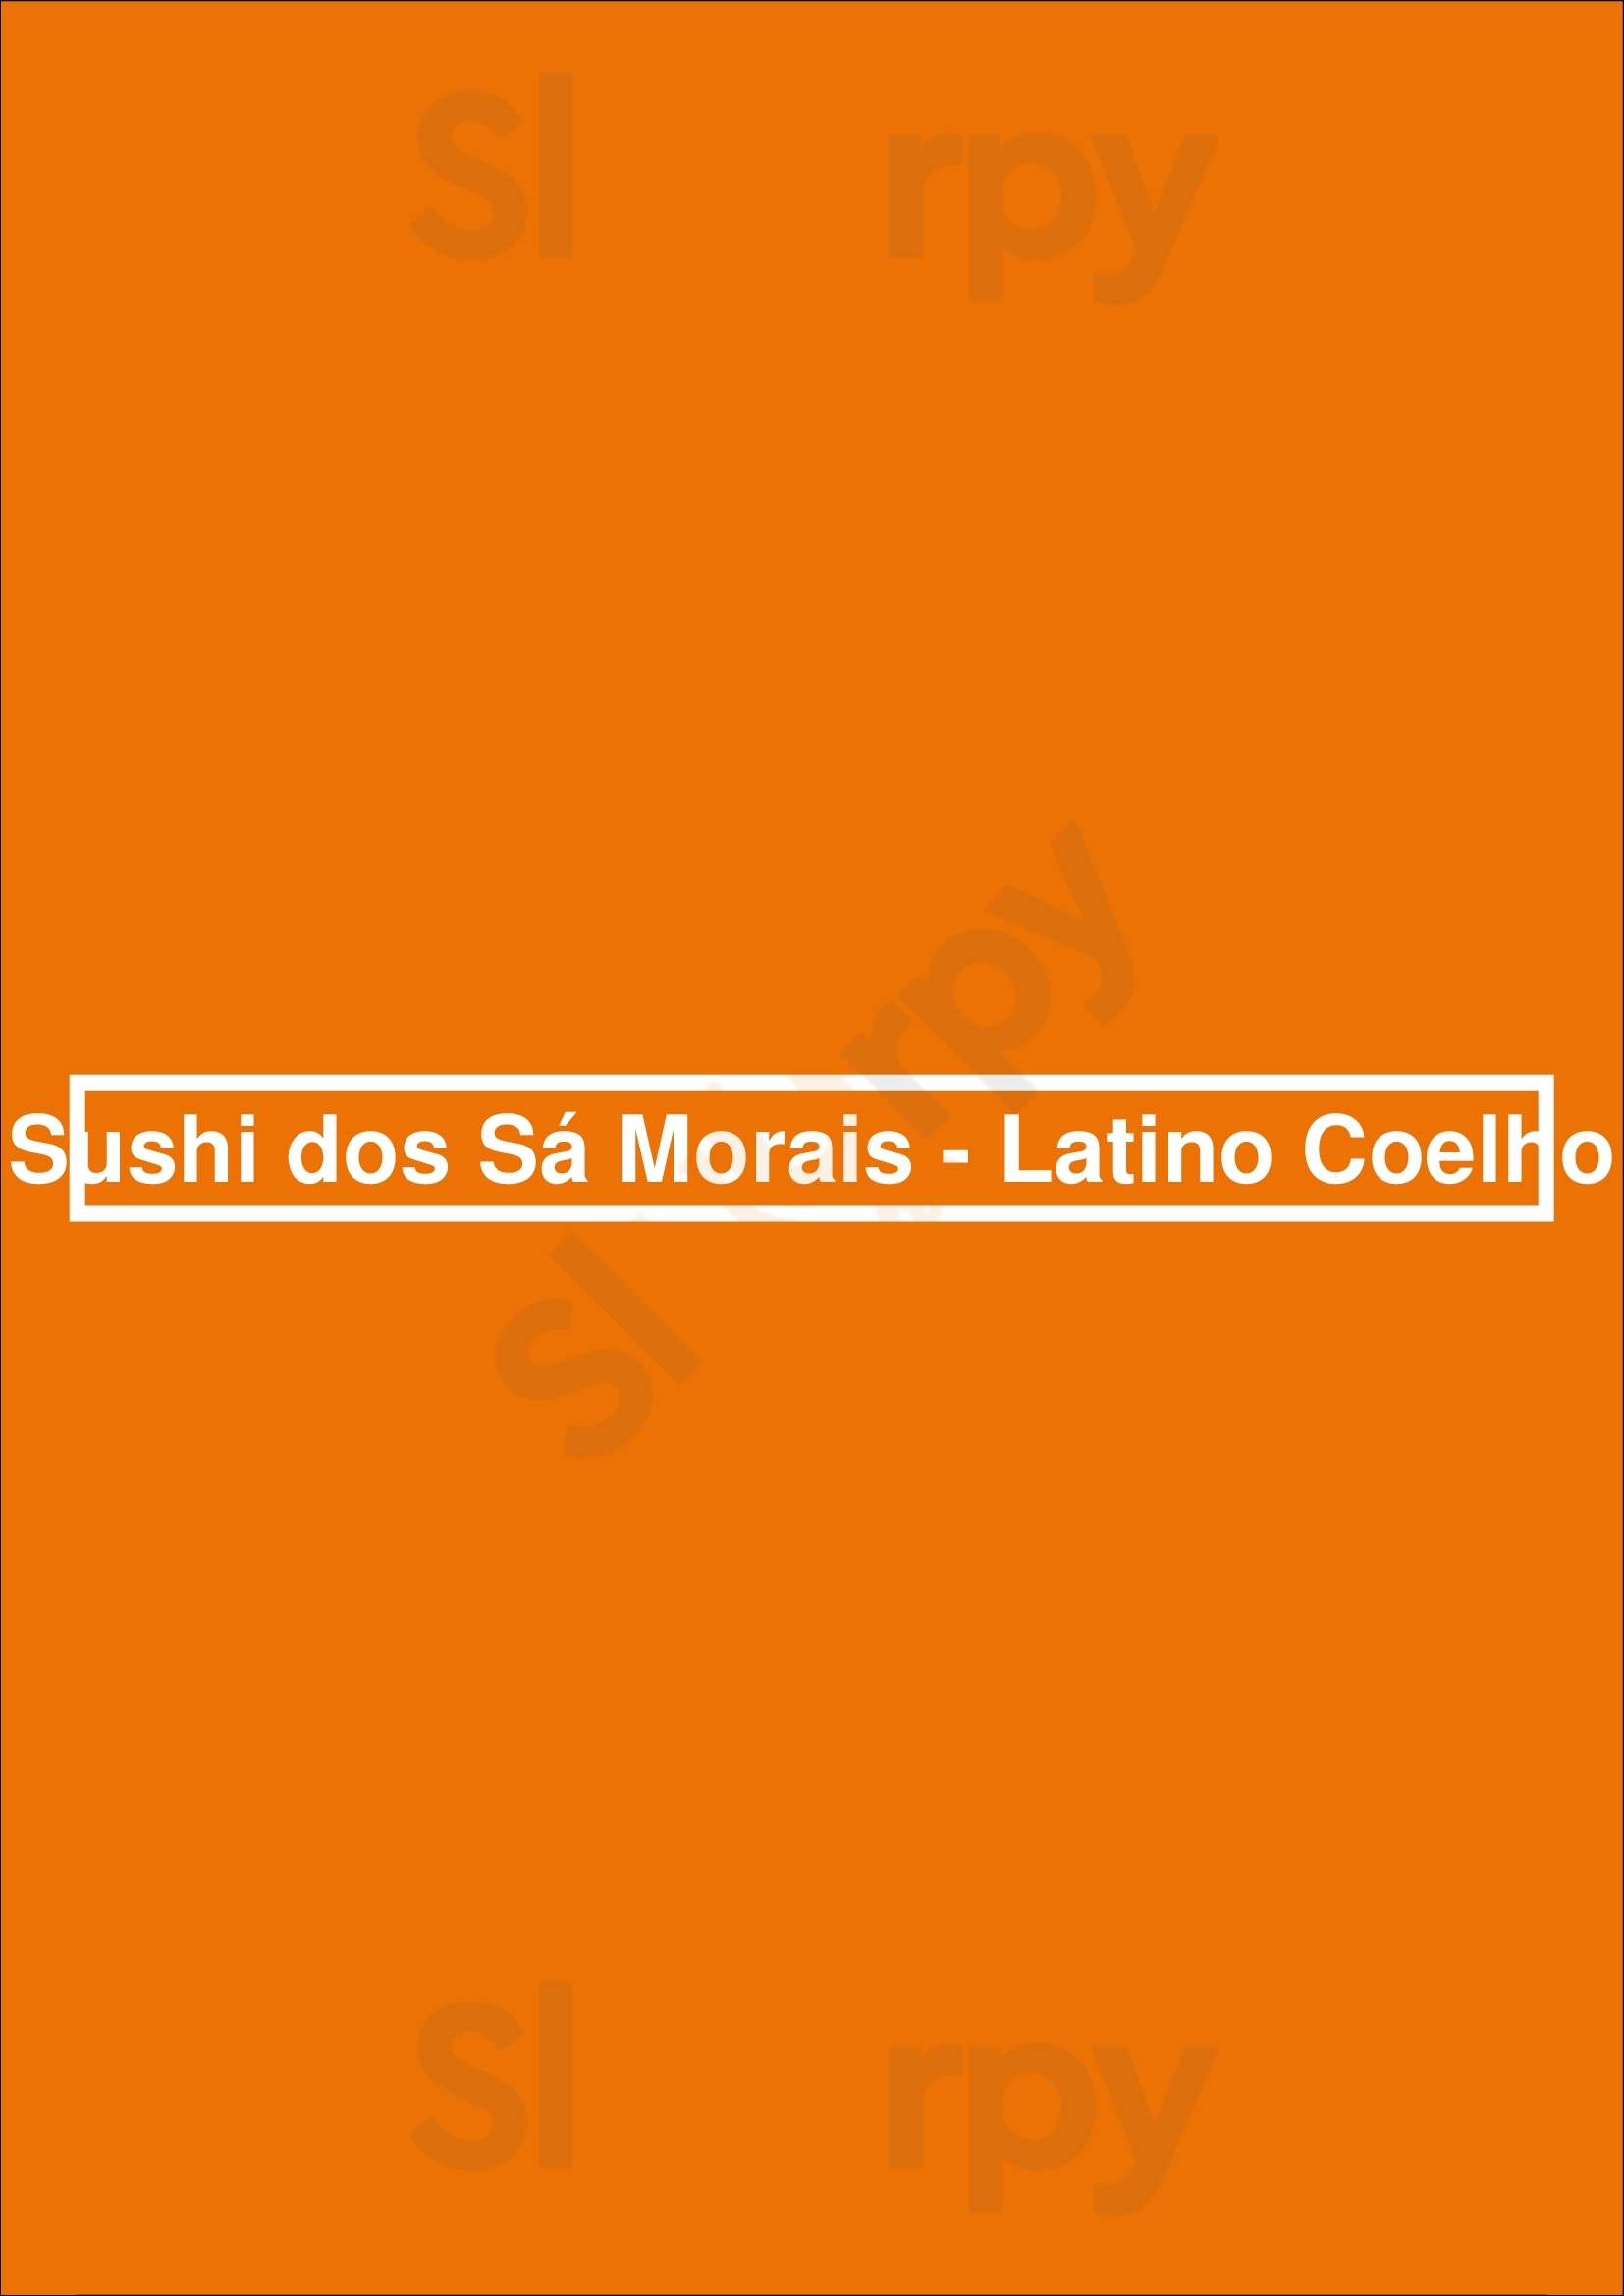 Sushi Dos Sá Morais - Latino Coelho Lisboa Menu - 1